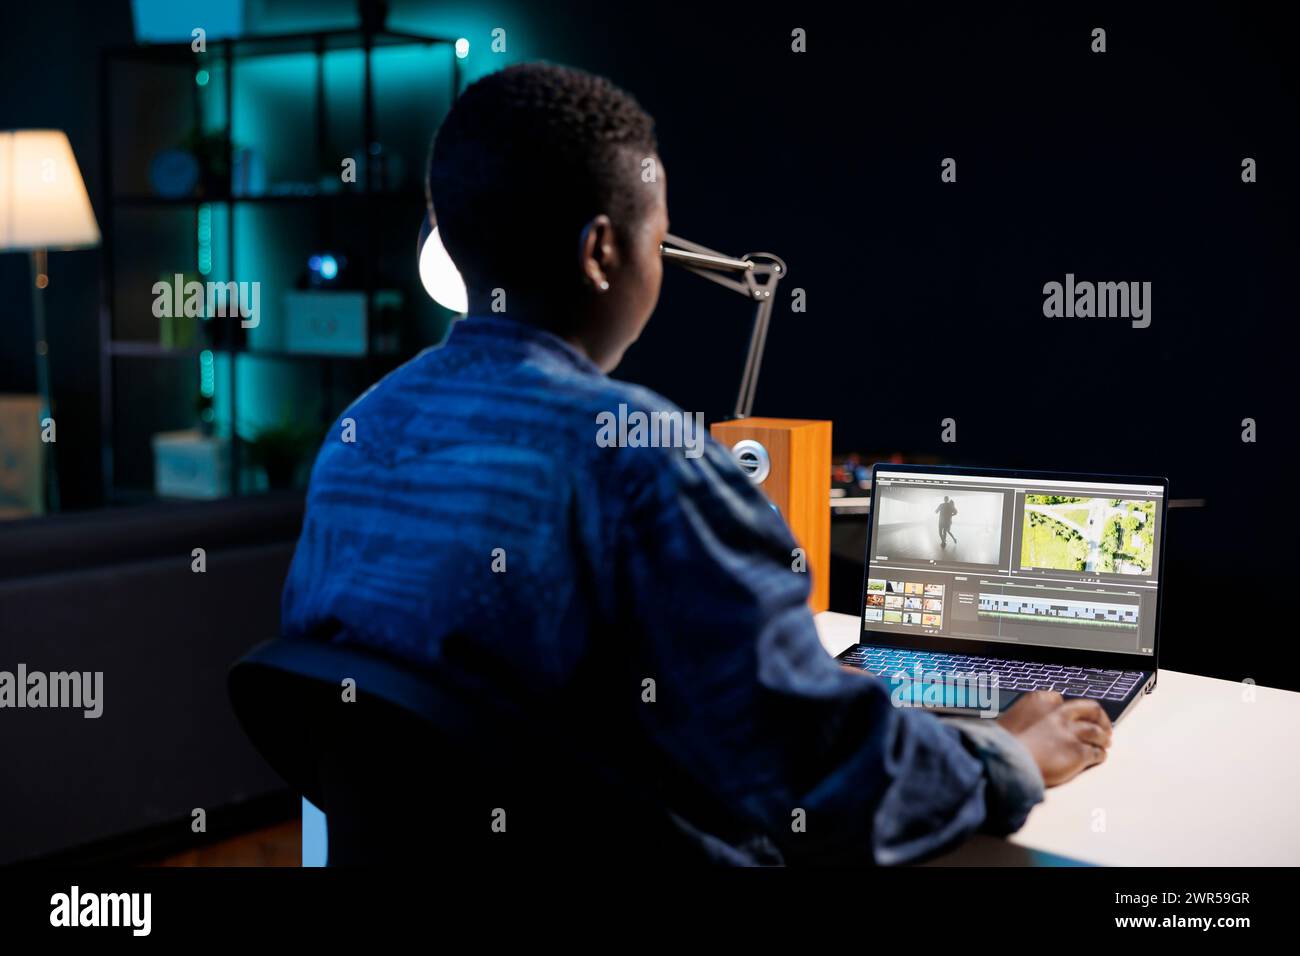 Die afroamerikanische Filmemacherin vertieft sich in ihren PC, bearbeitet und erstellt Multimedia-Inhalte. Das Bild zeigt eine schwarze Frau, die auf einem digitalen Laptop sitzt und arbeitet und das Filmmaterial analysiert. Stockfoto